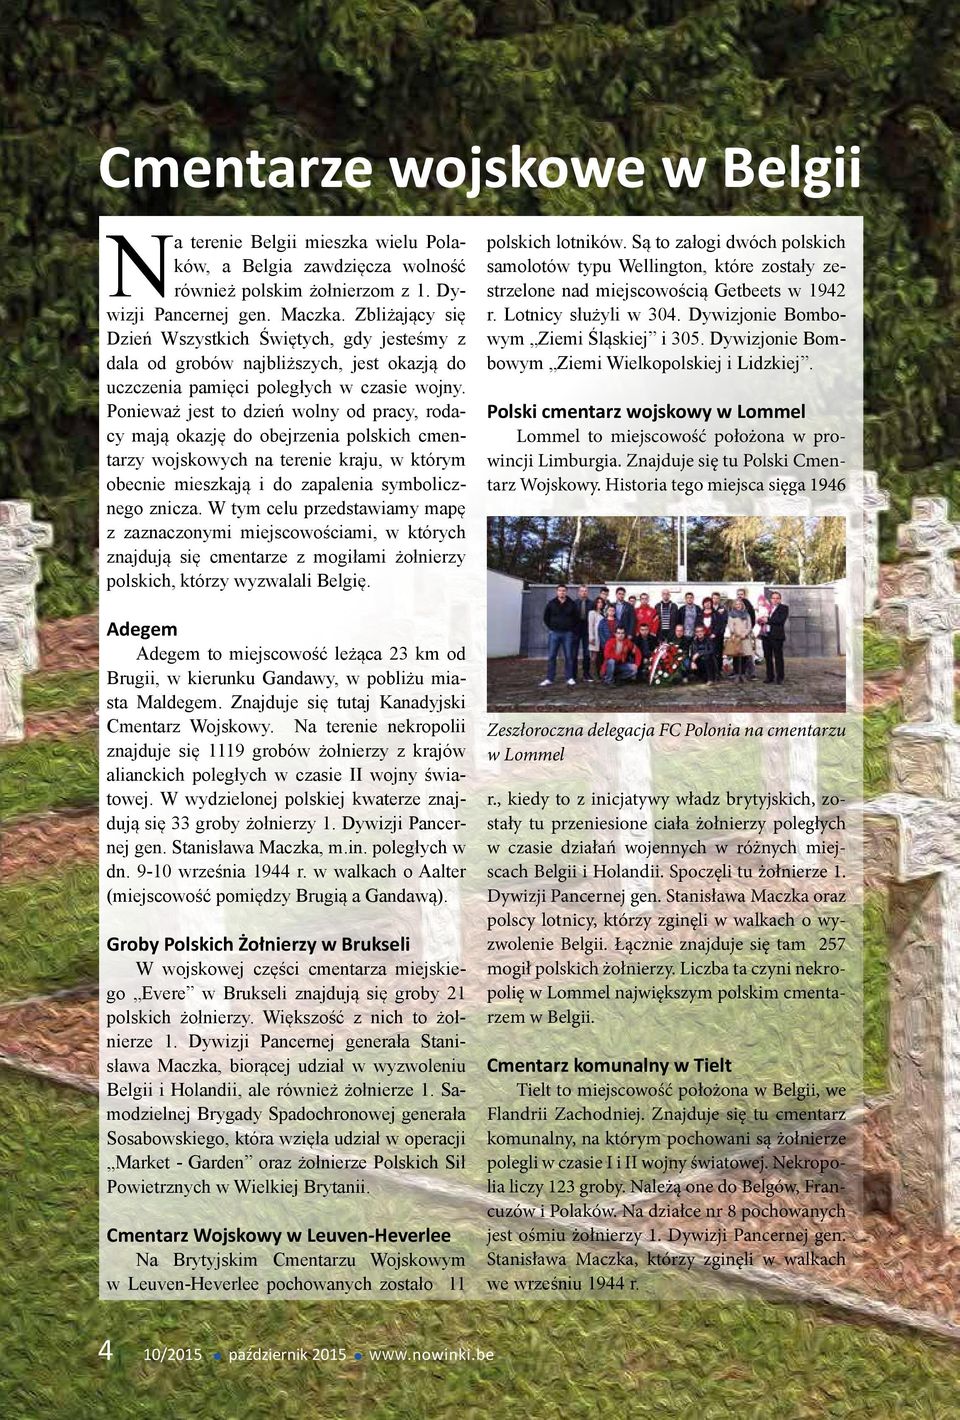 Ponieważ jest to dzień wolny od pracy, rodacy mają okazję do obejrzenia polskich cmentarzy wojskowych na terenie kraju, w którym obecnie mieszkają i do zapalenia symbolicznego znicza.